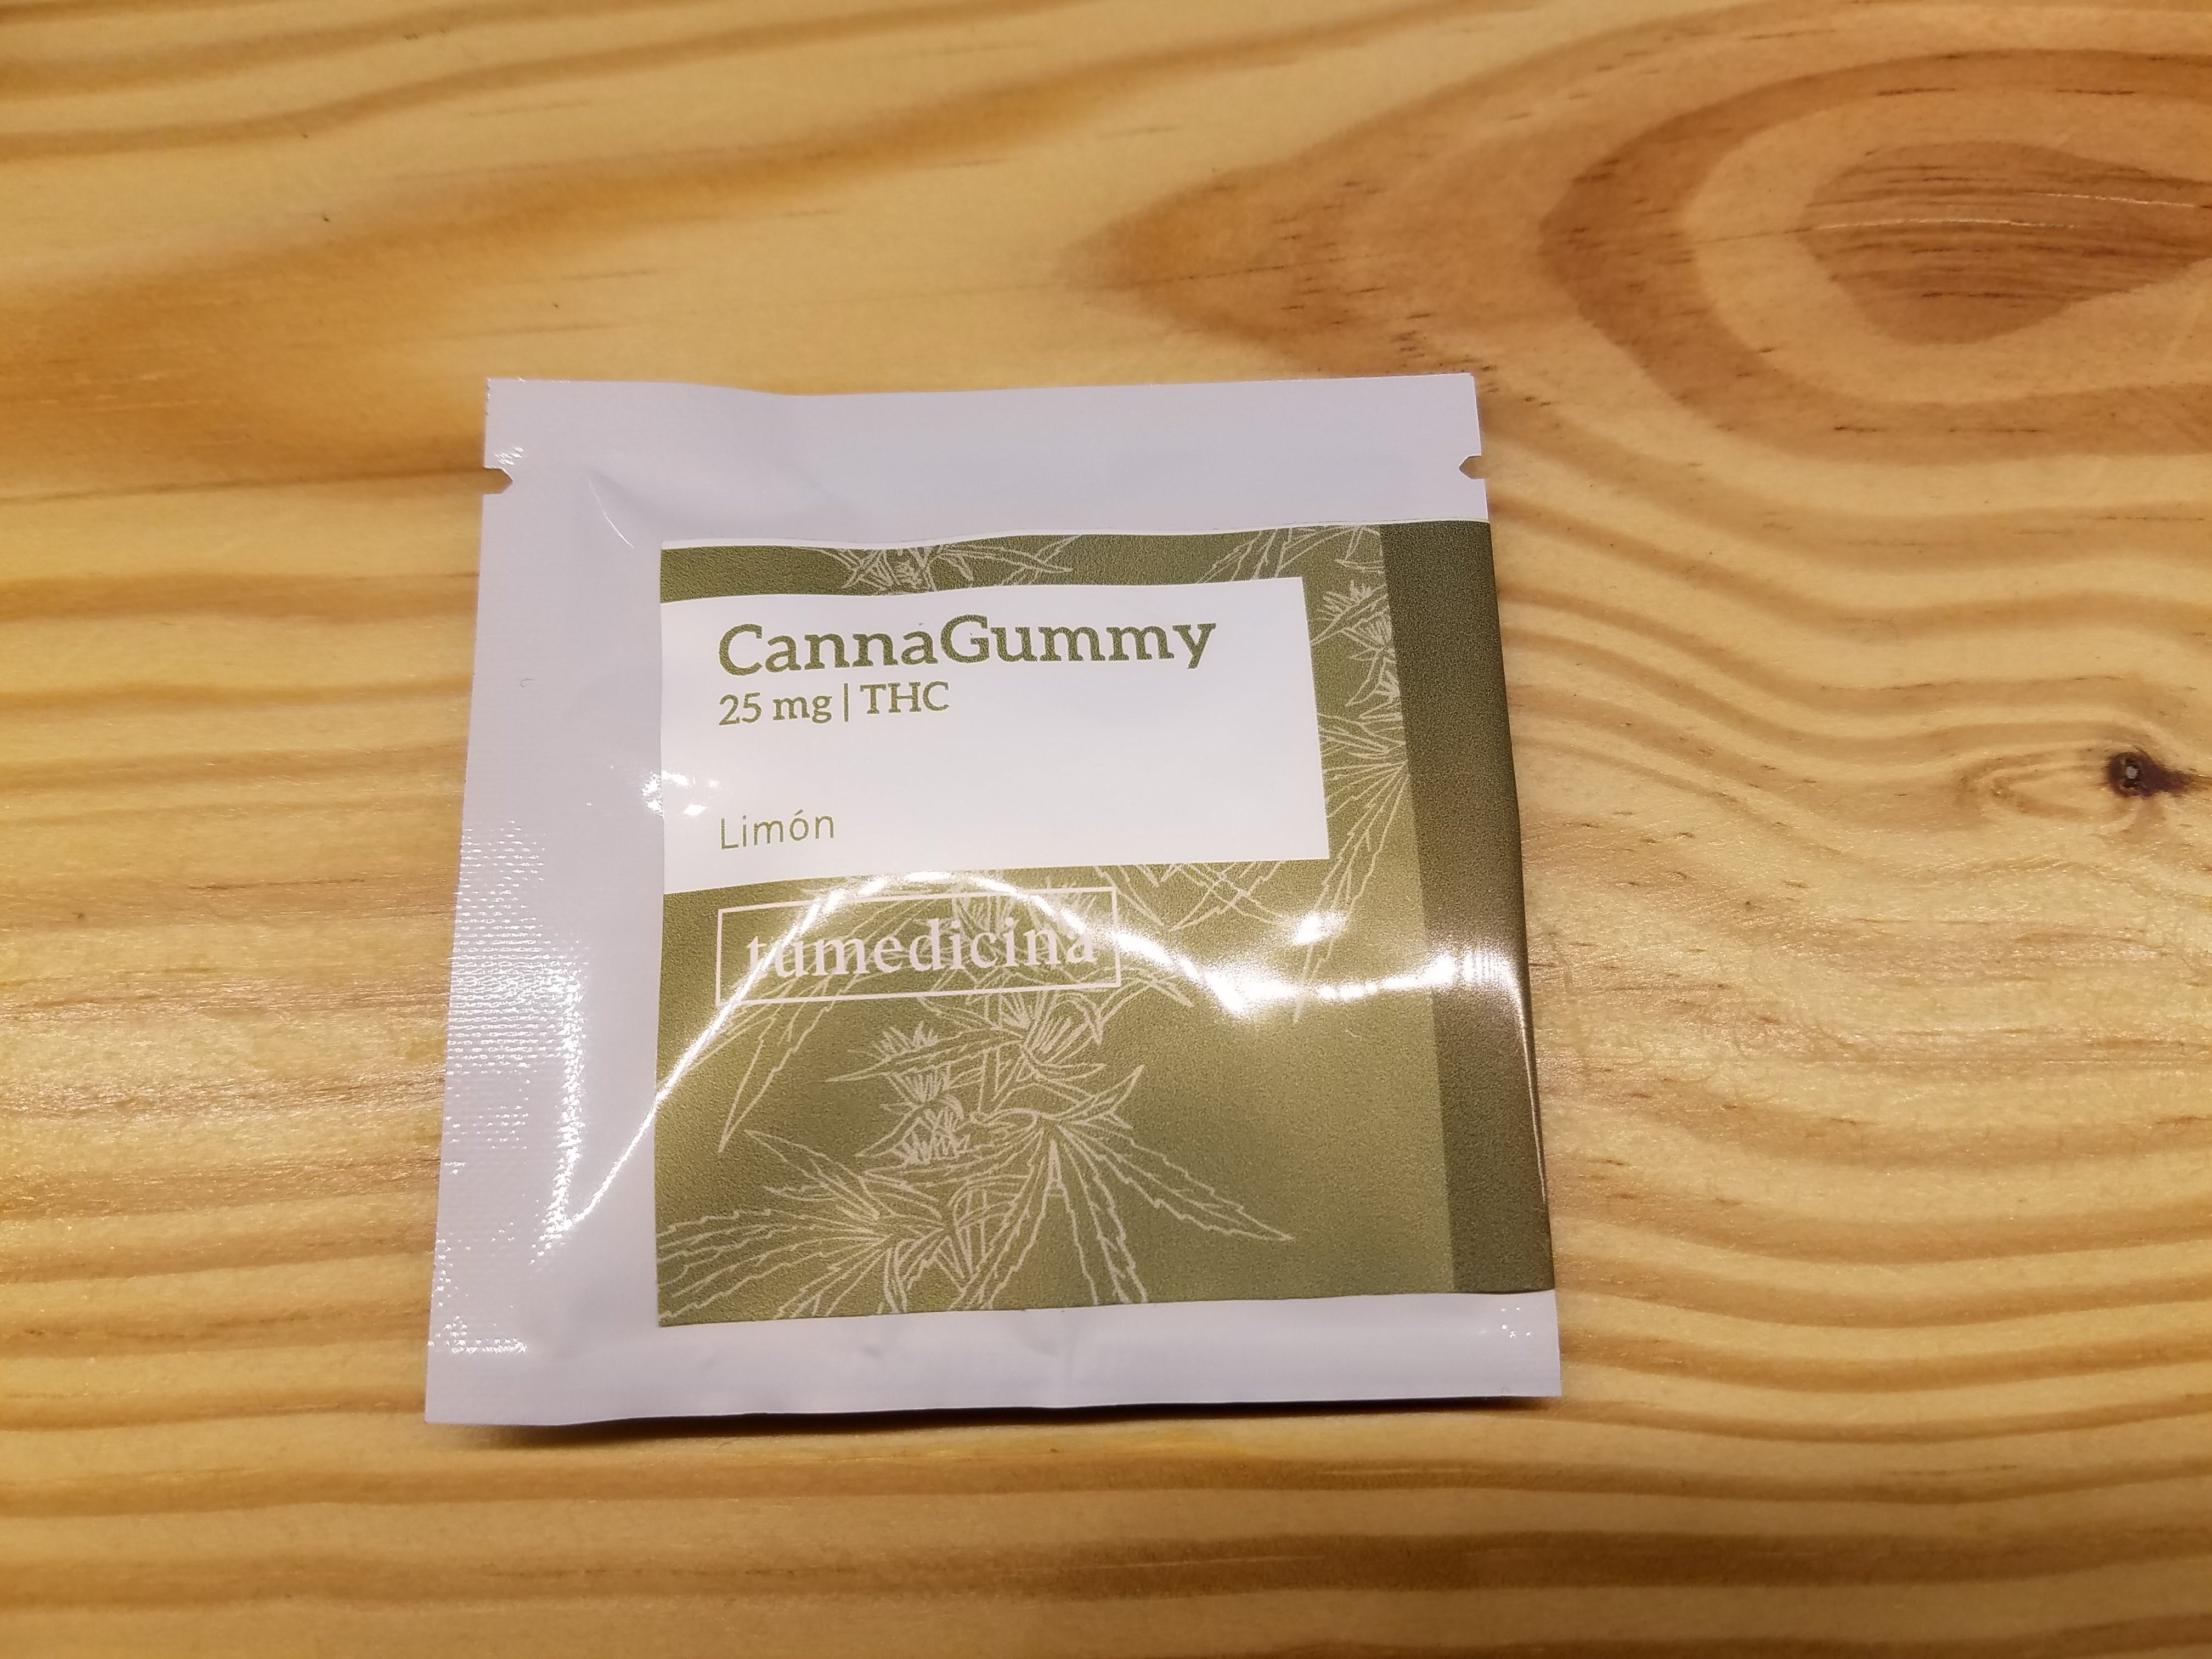 edible-cannagummy-limon-25mg-thc